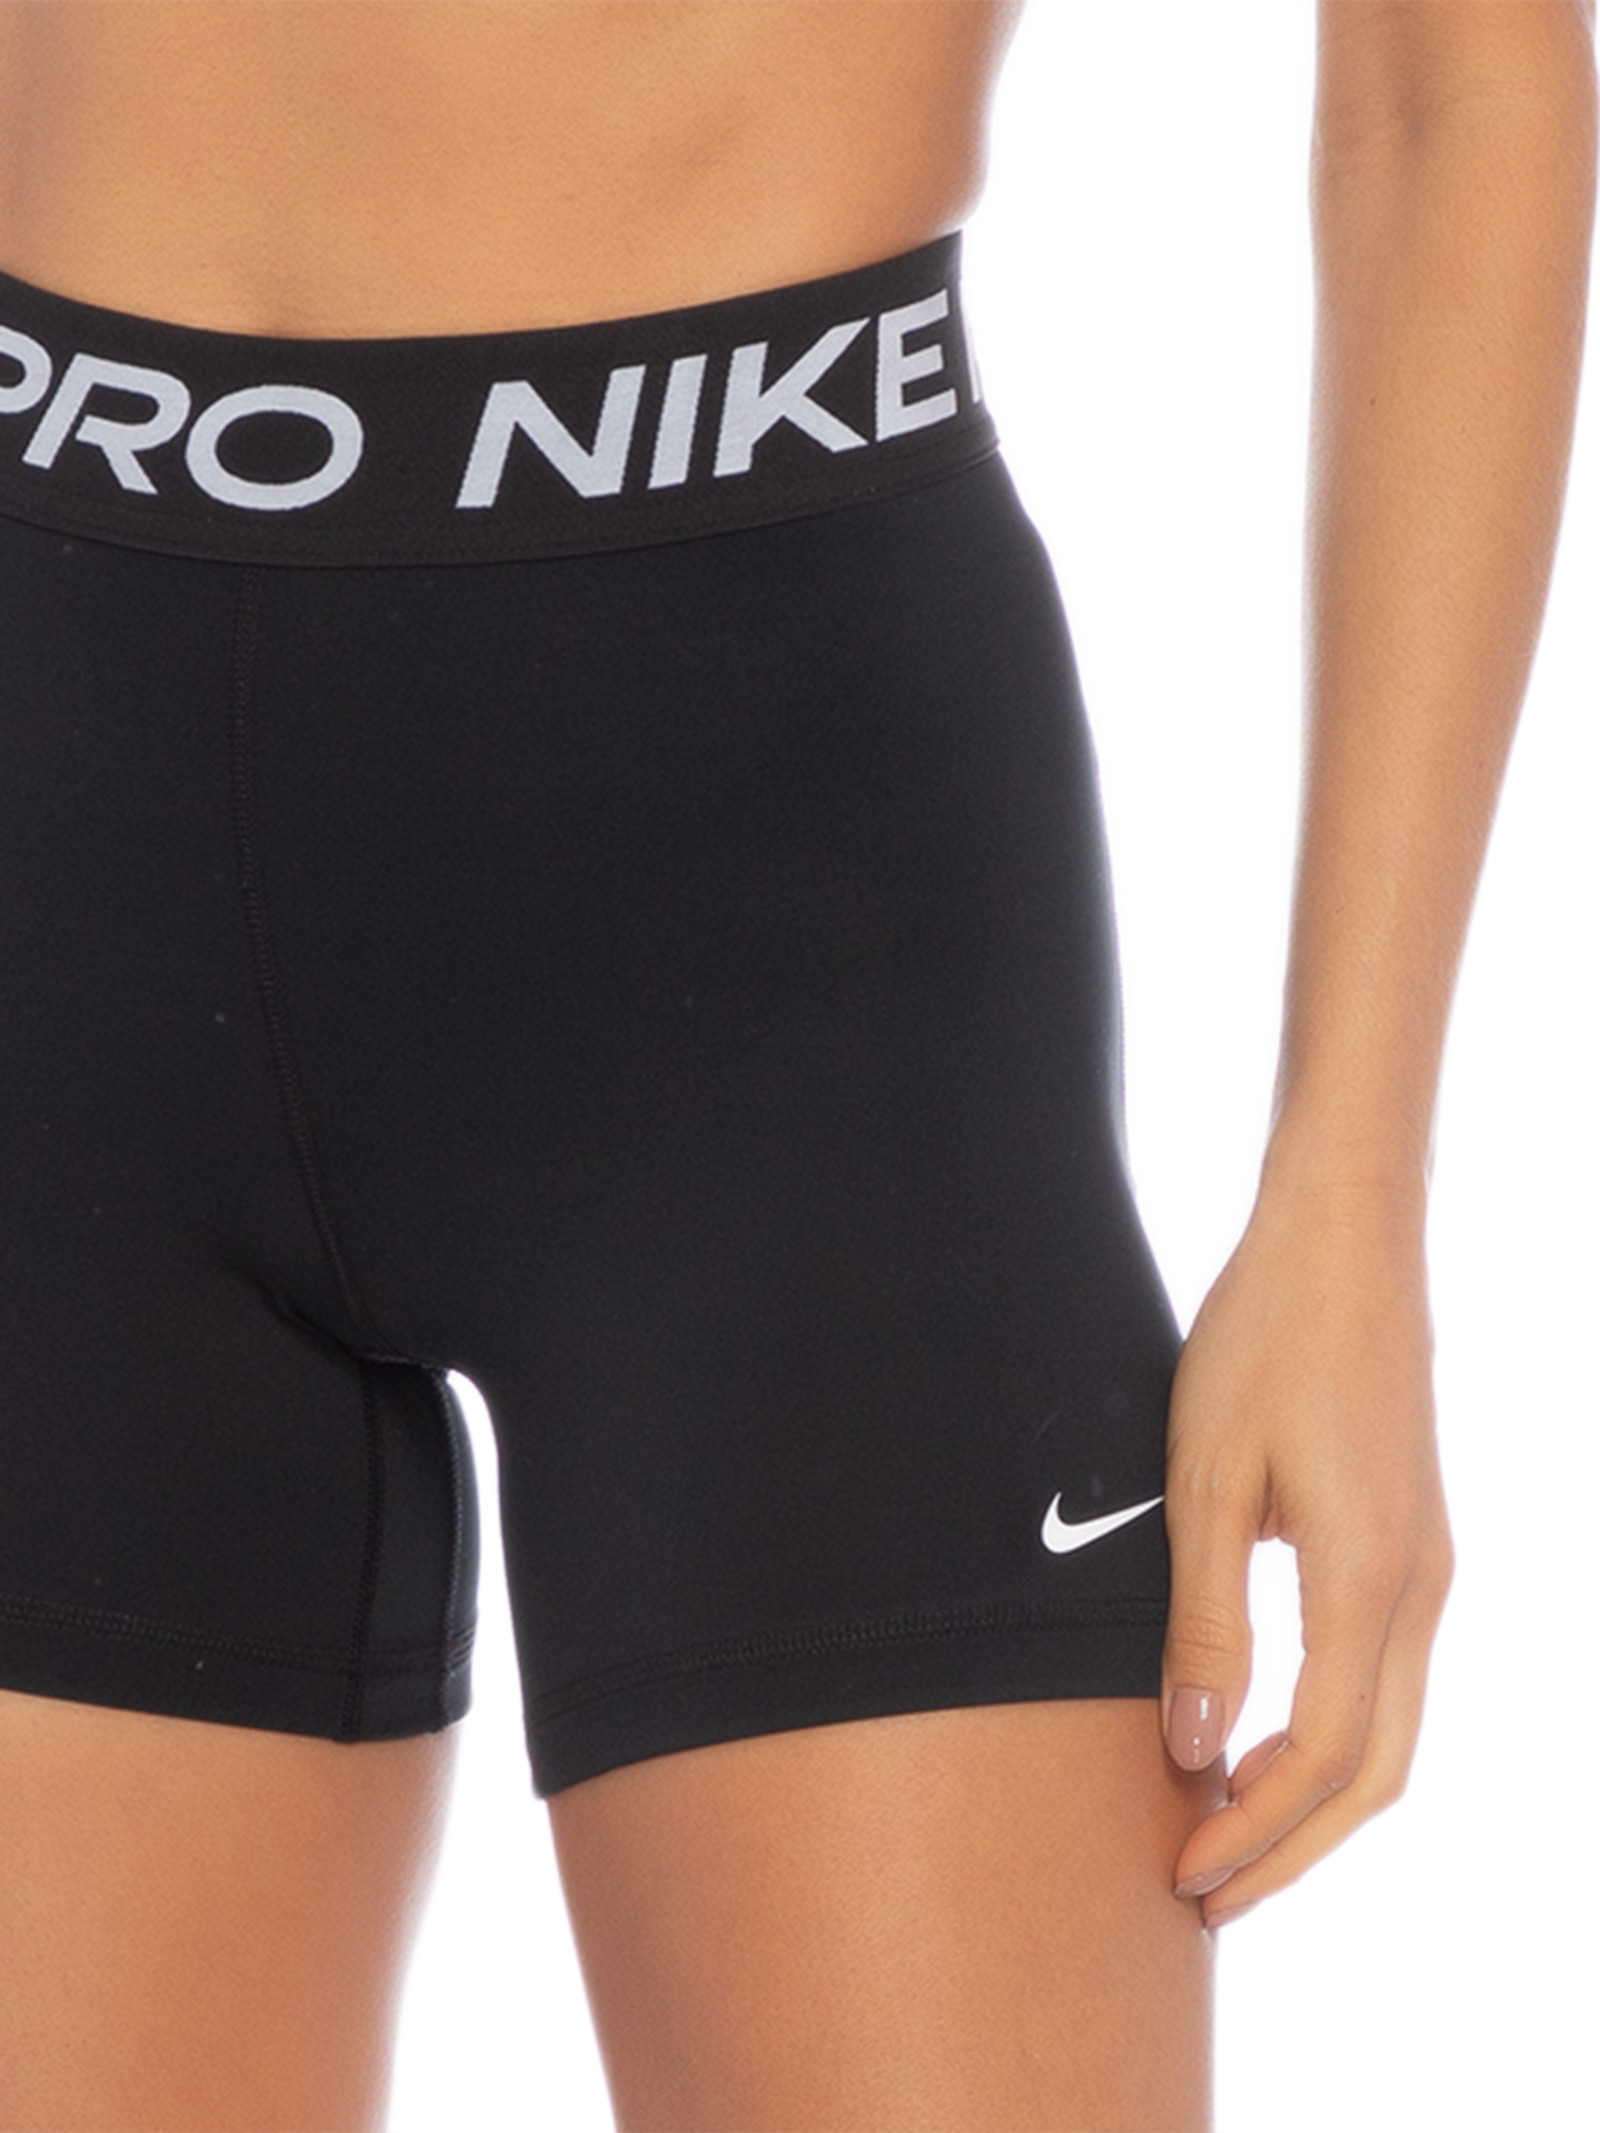 Nike Pro.